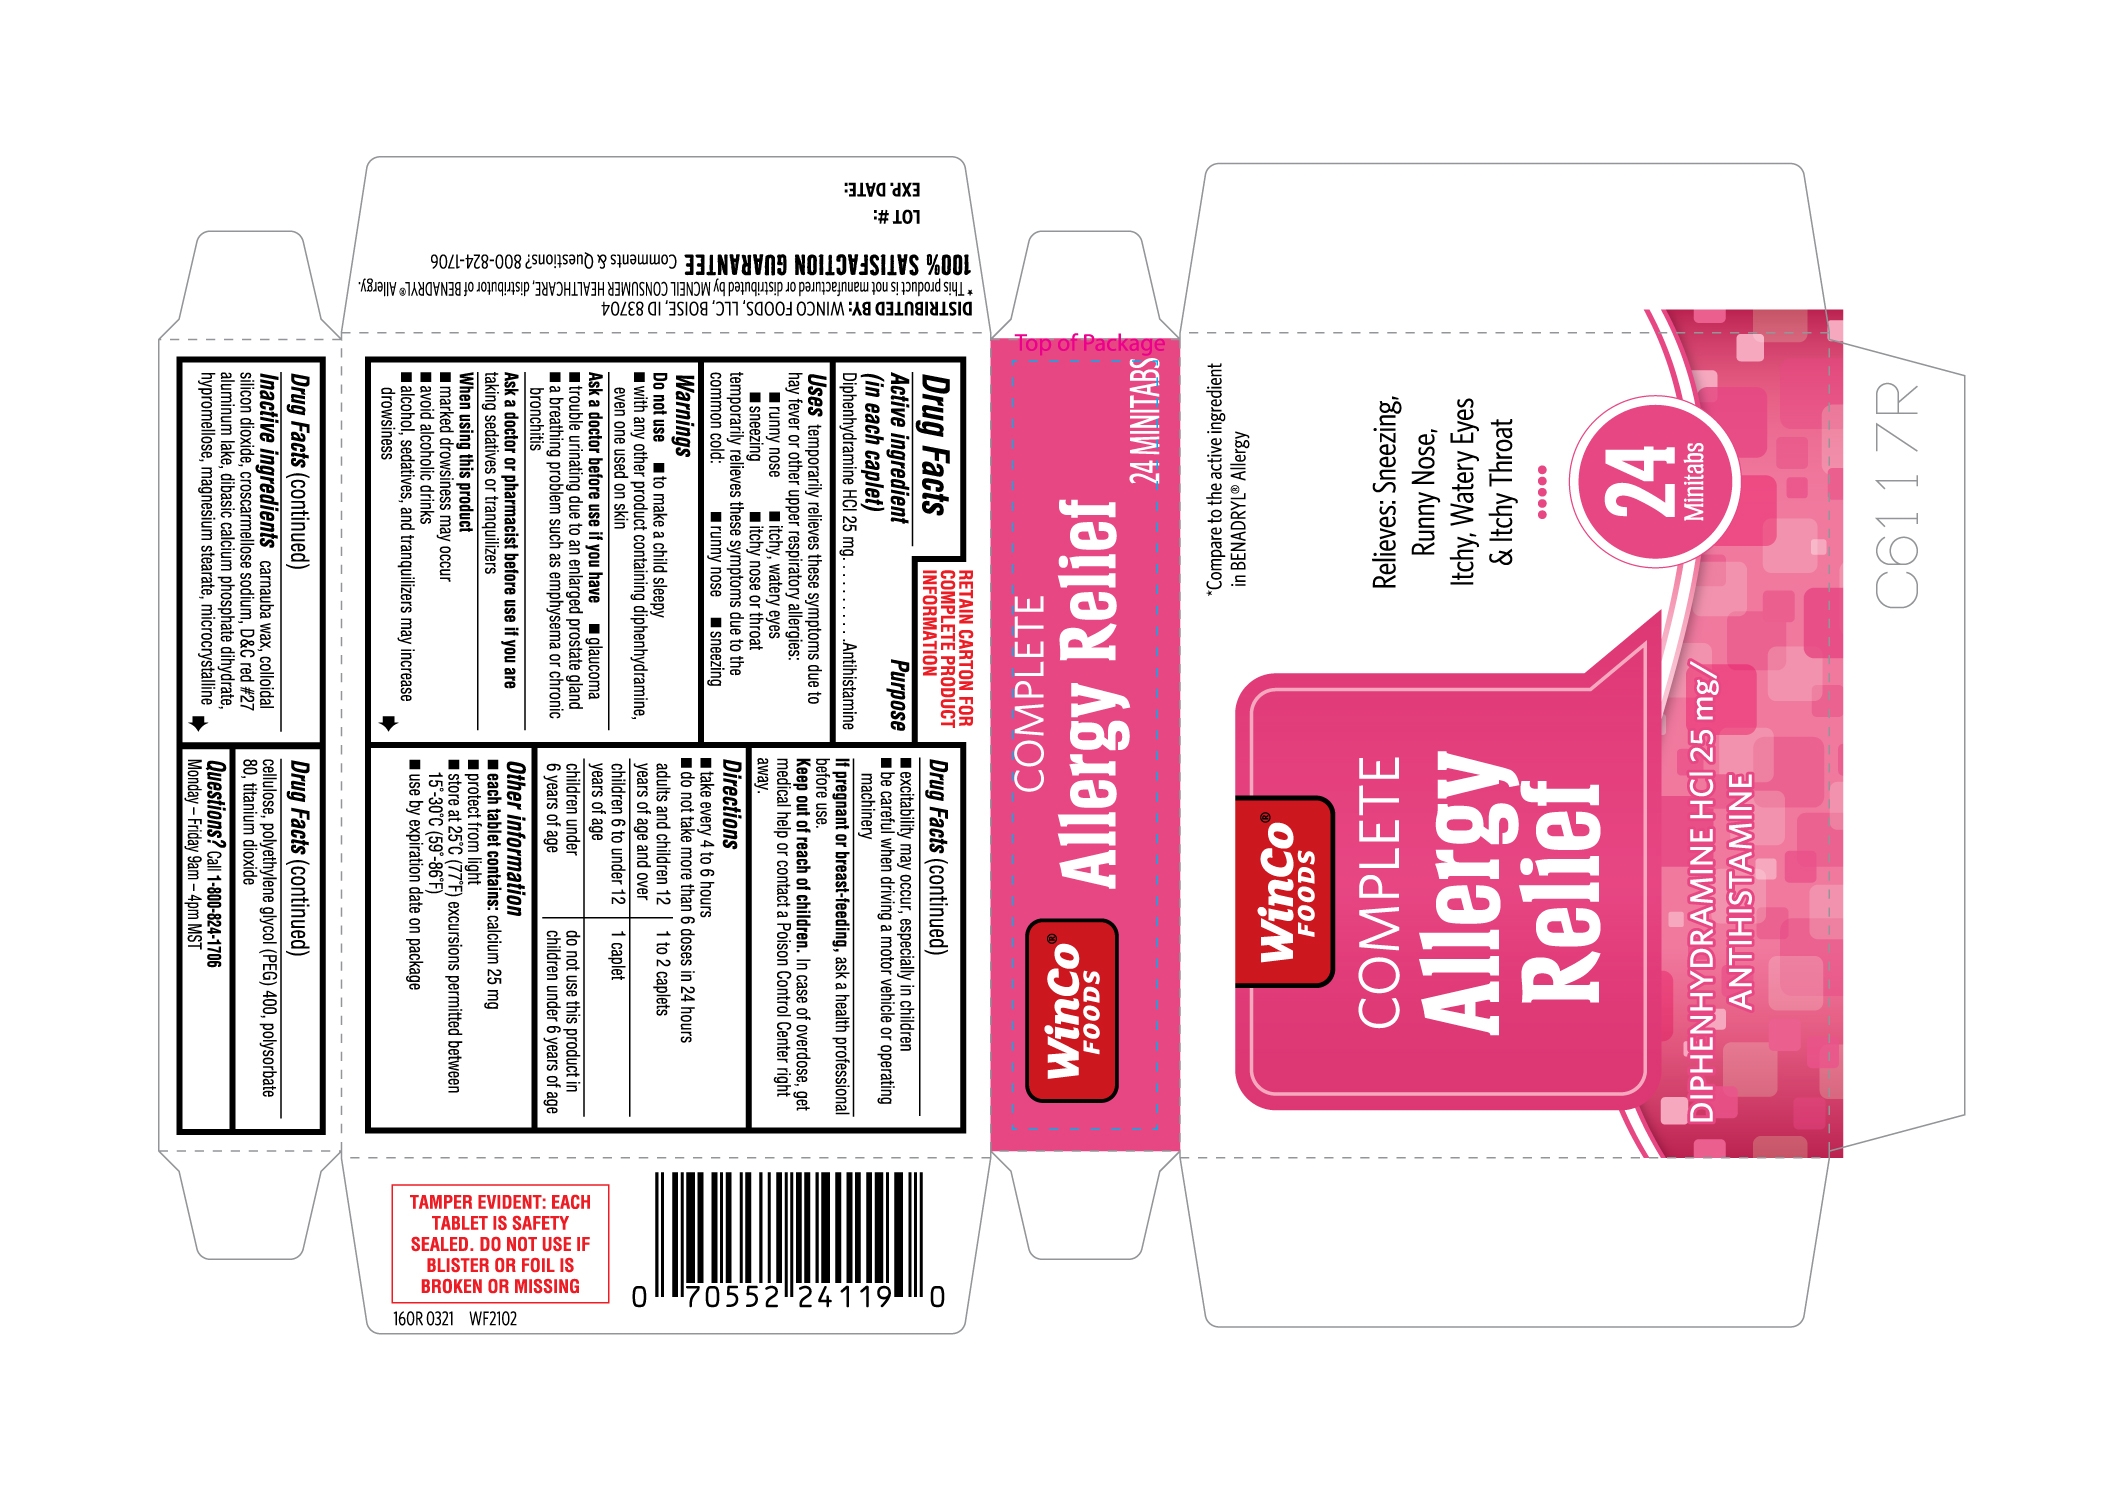 160R-Winco-Allergy-Relief-carton-label-24s